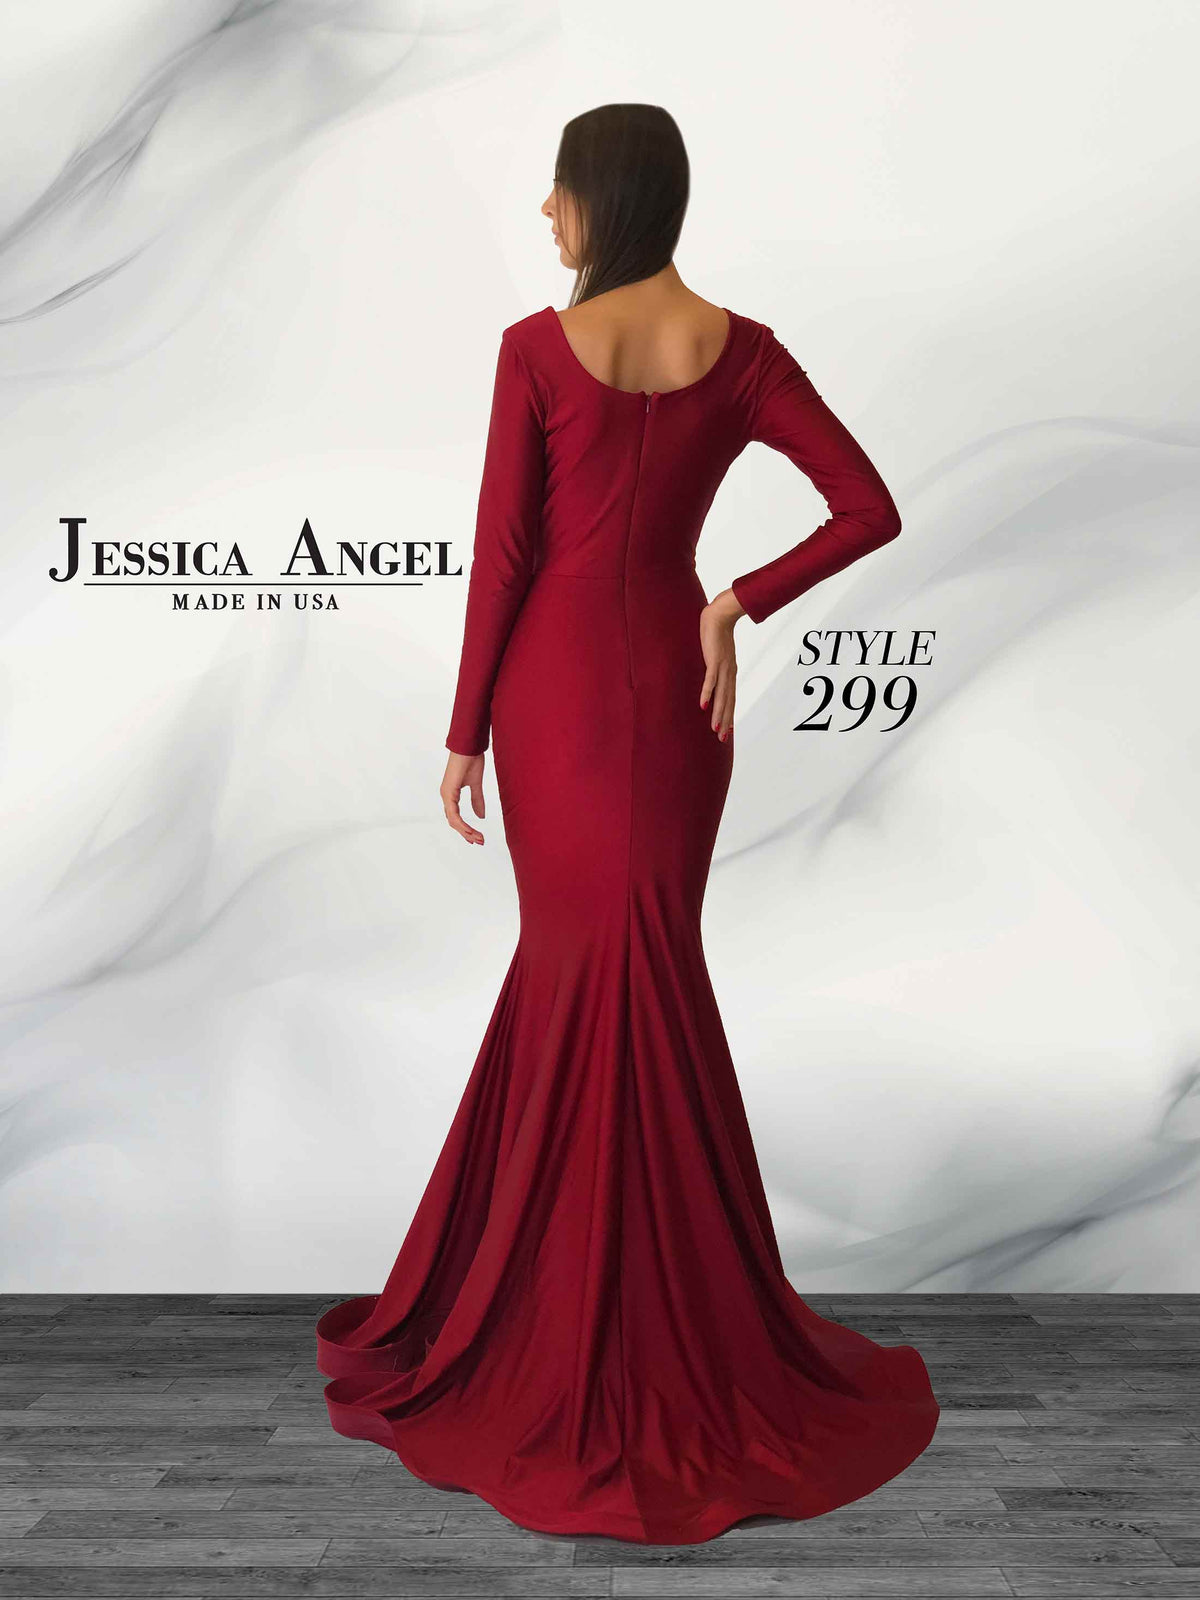 Jessica Angel 299